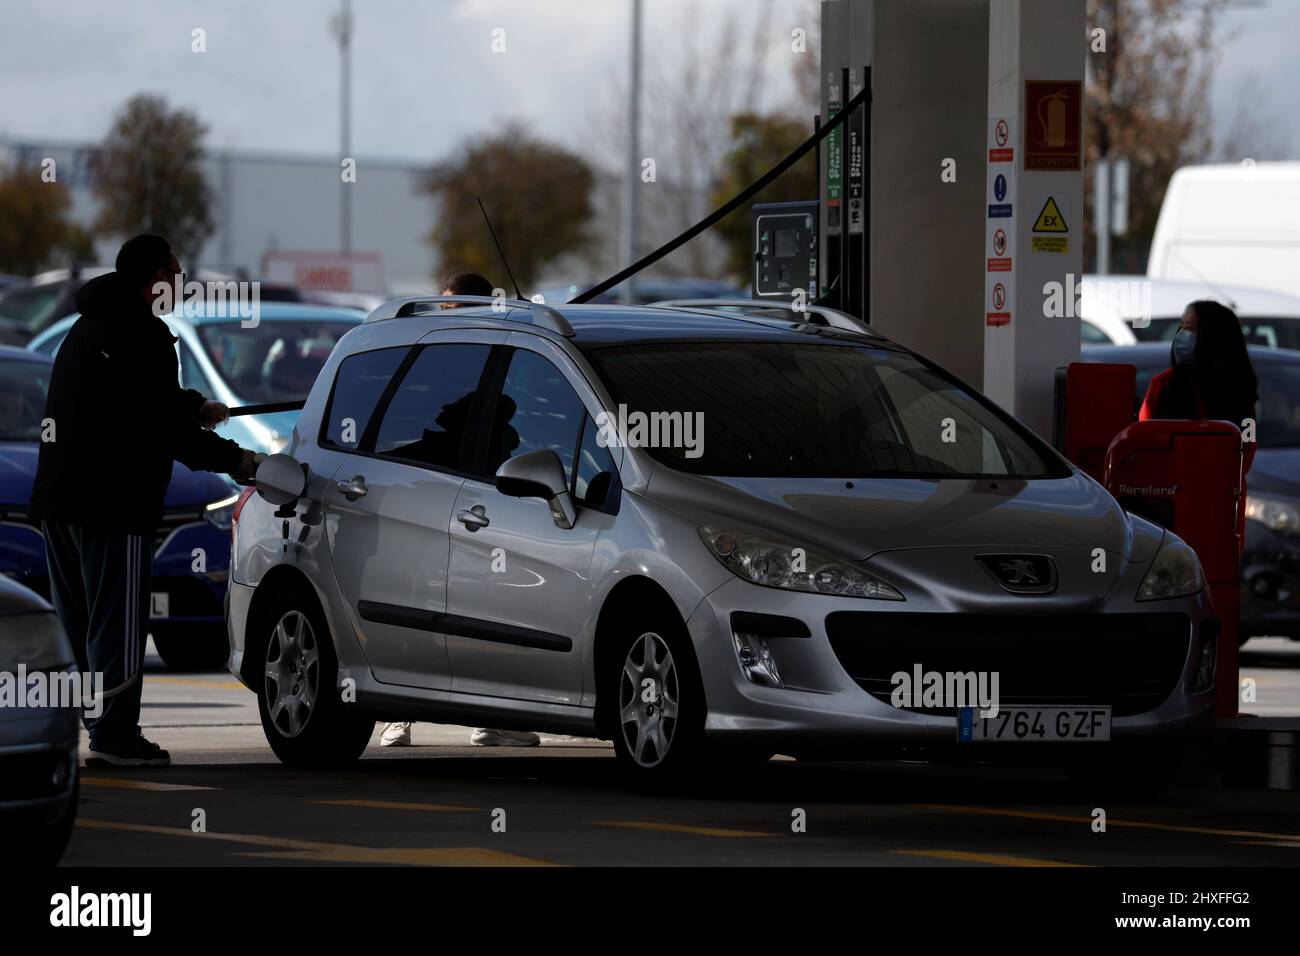 Un chauffeur ravitaille une voiture dans une station-service à bas prix,  tandis que d'autres conducteurs continuent de faire la queue, car le prix  de l'essence continue d'augmenter, à Getafe, Espagne, le 12